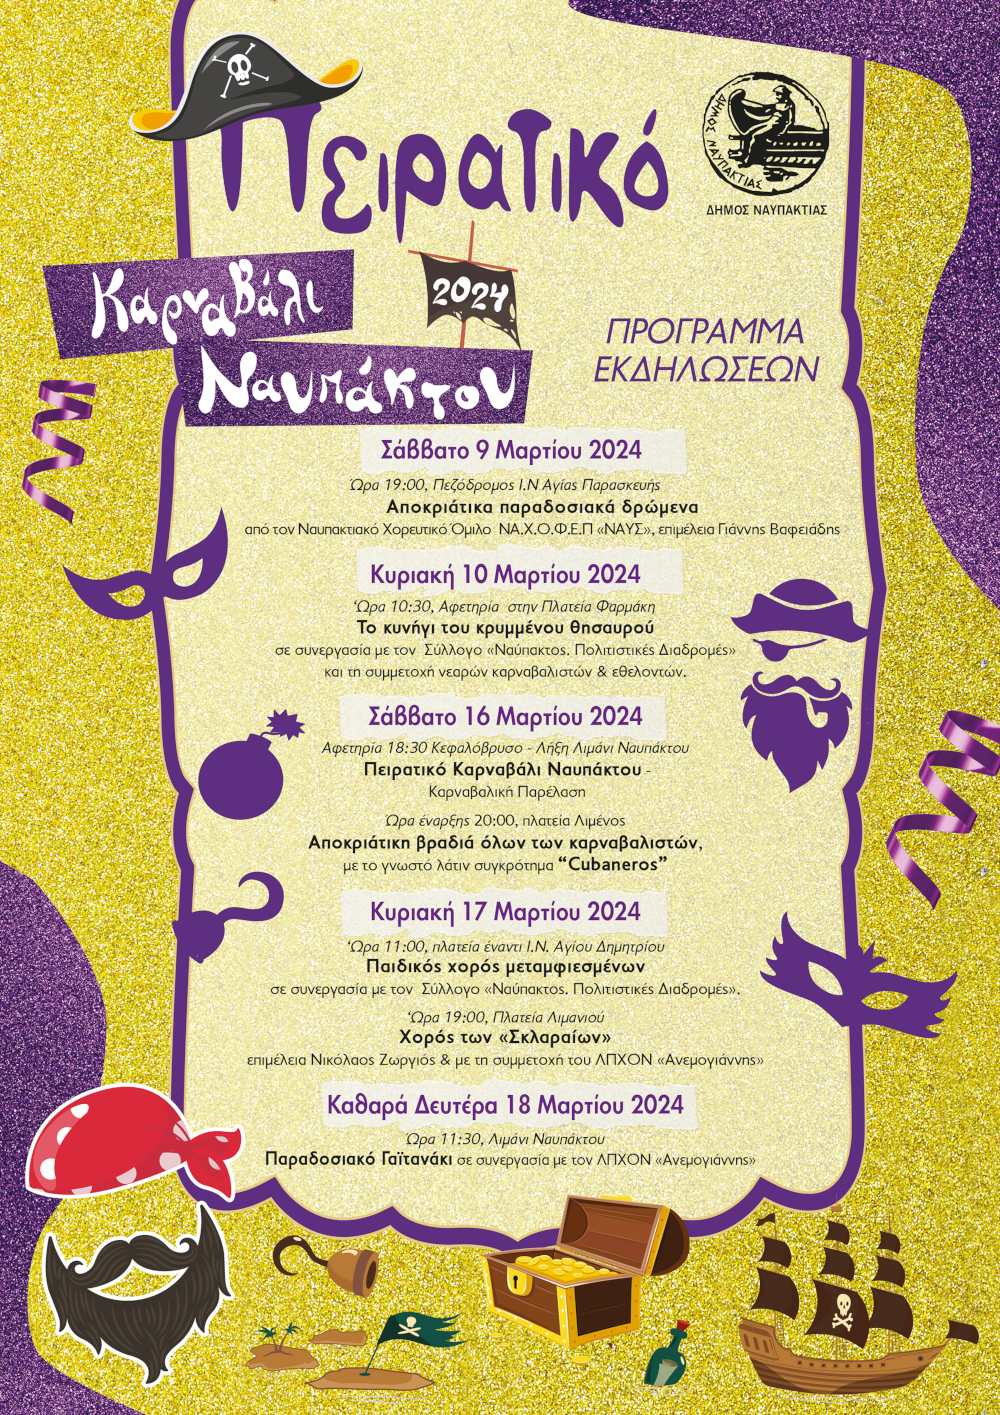 Ξεκινούν οι καρναβαλικές εκδηλώσεις του Δήμου Ναυπακτίας